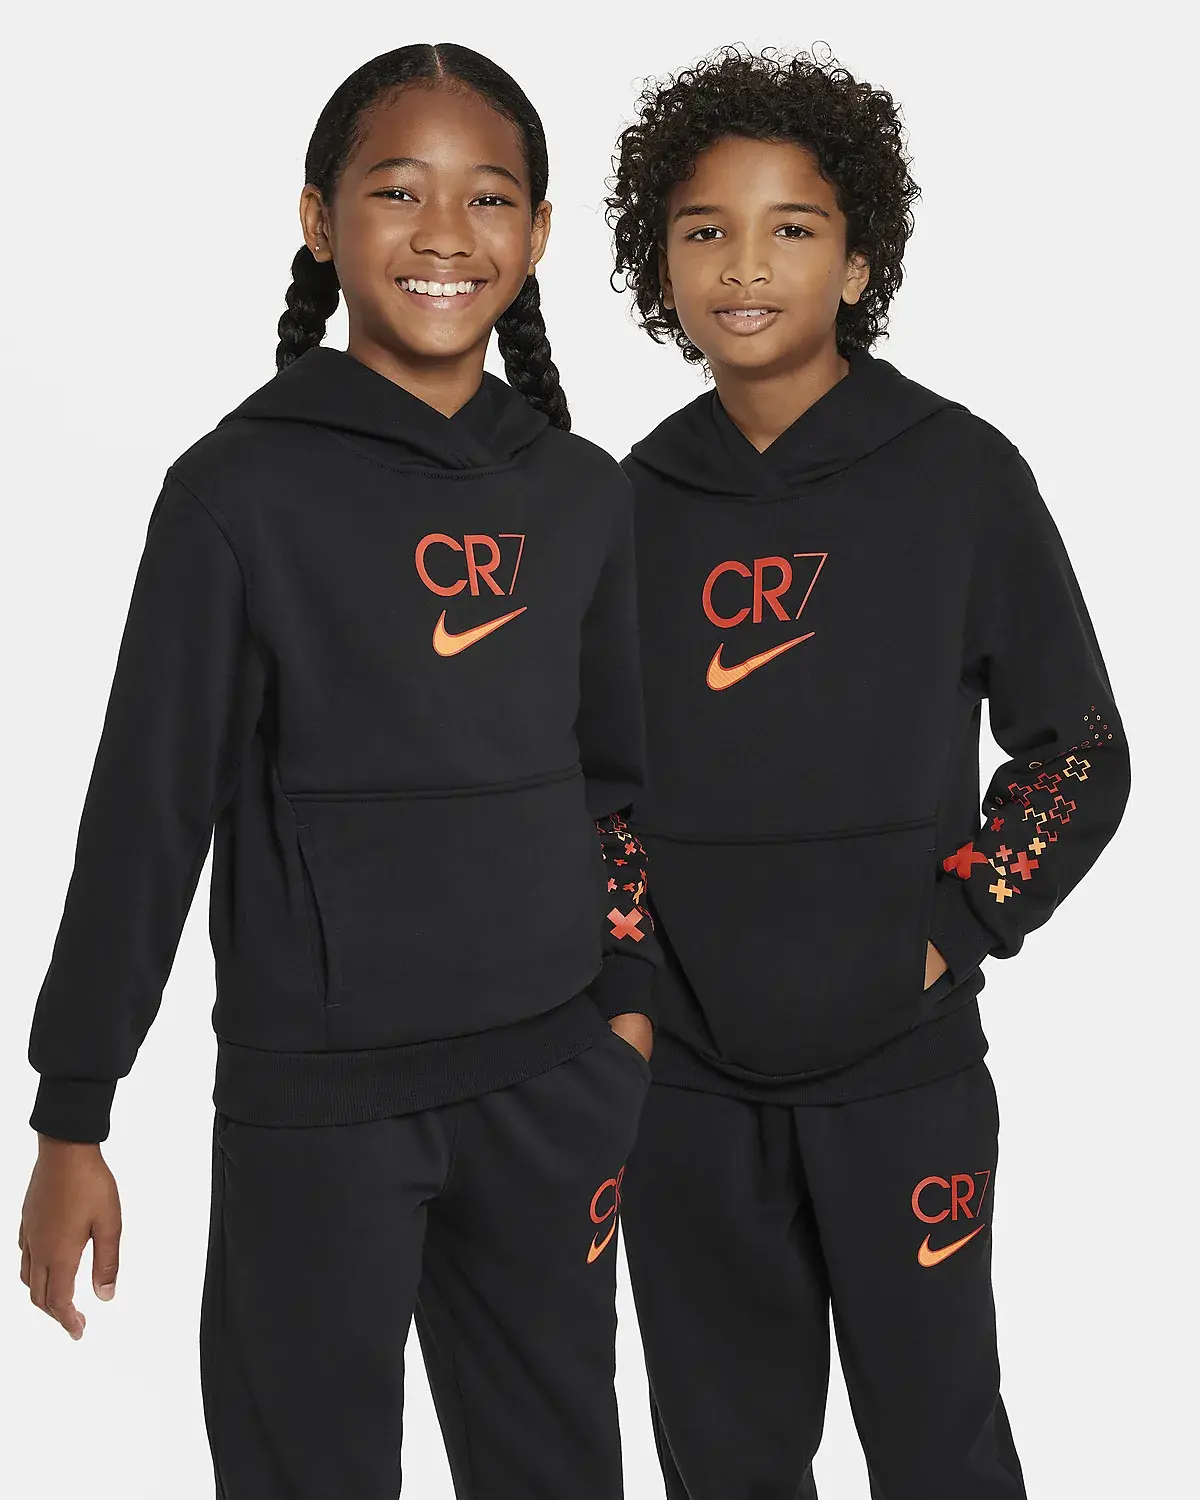 Nike CR7. 1